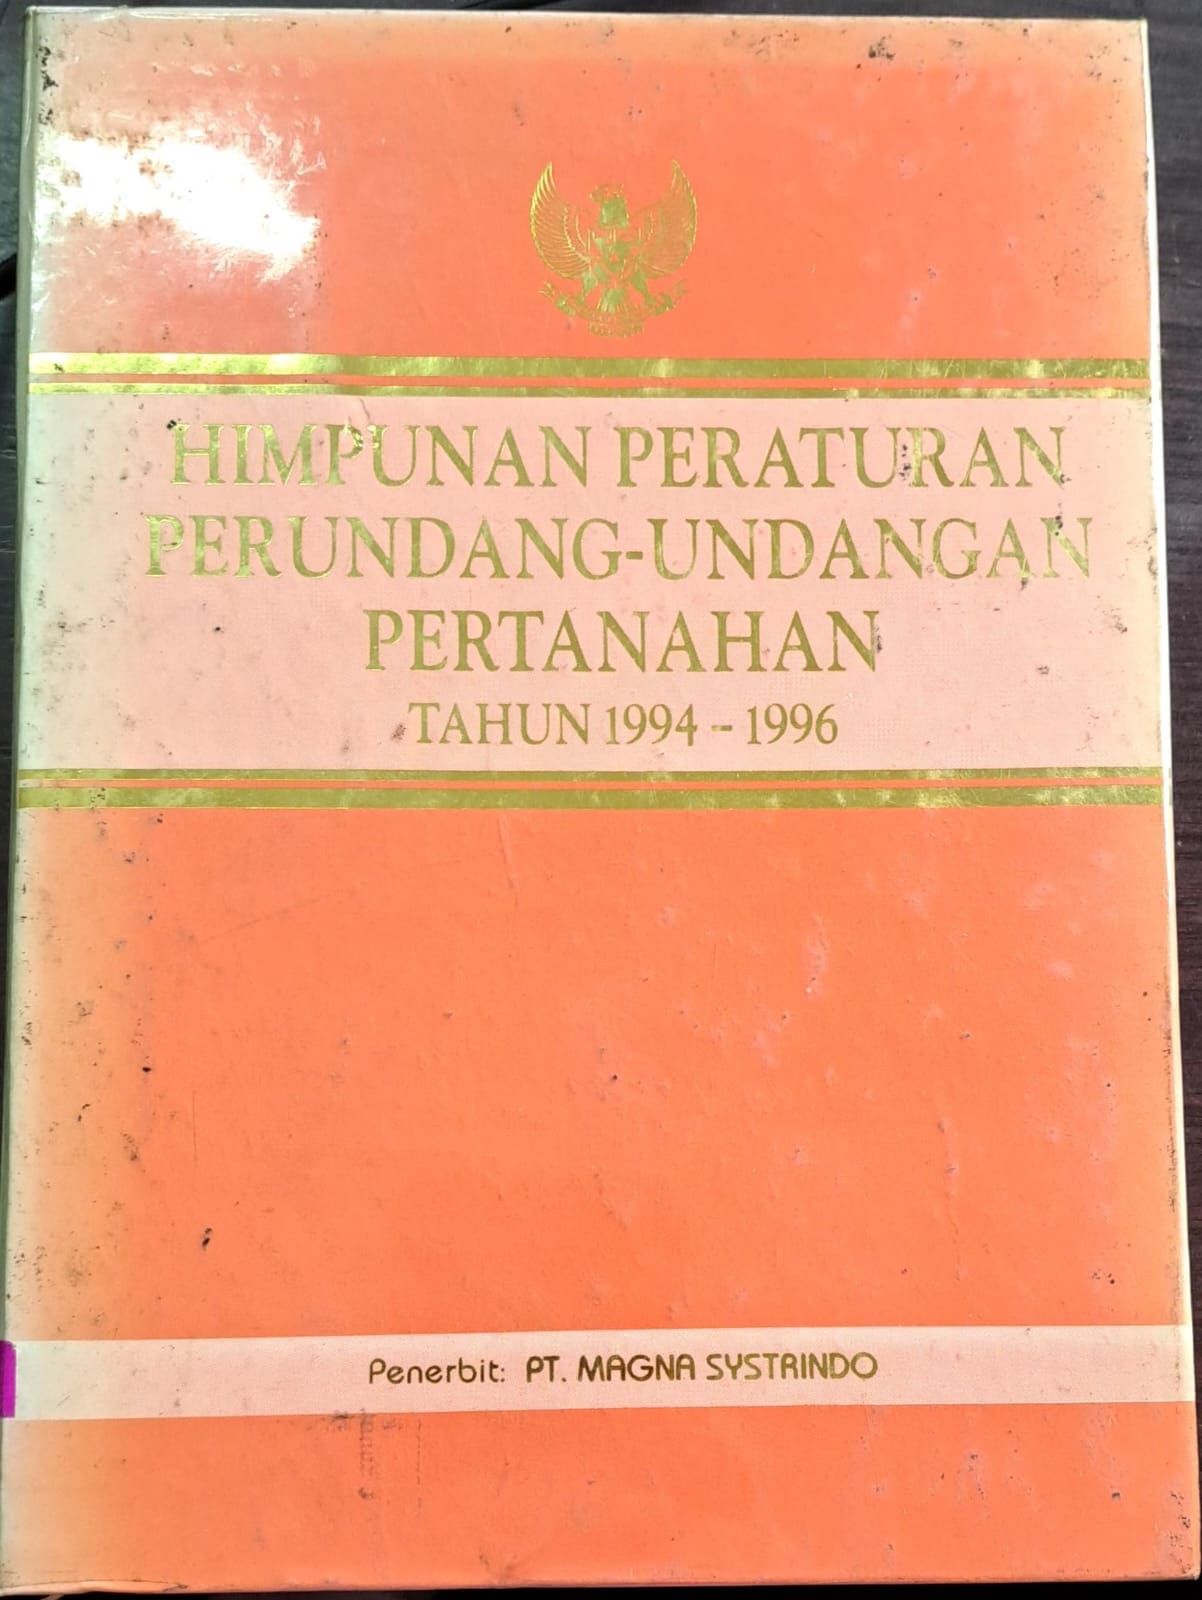 Himpunan peraturan perundang-undangan pertahanan tahun 1994-1996